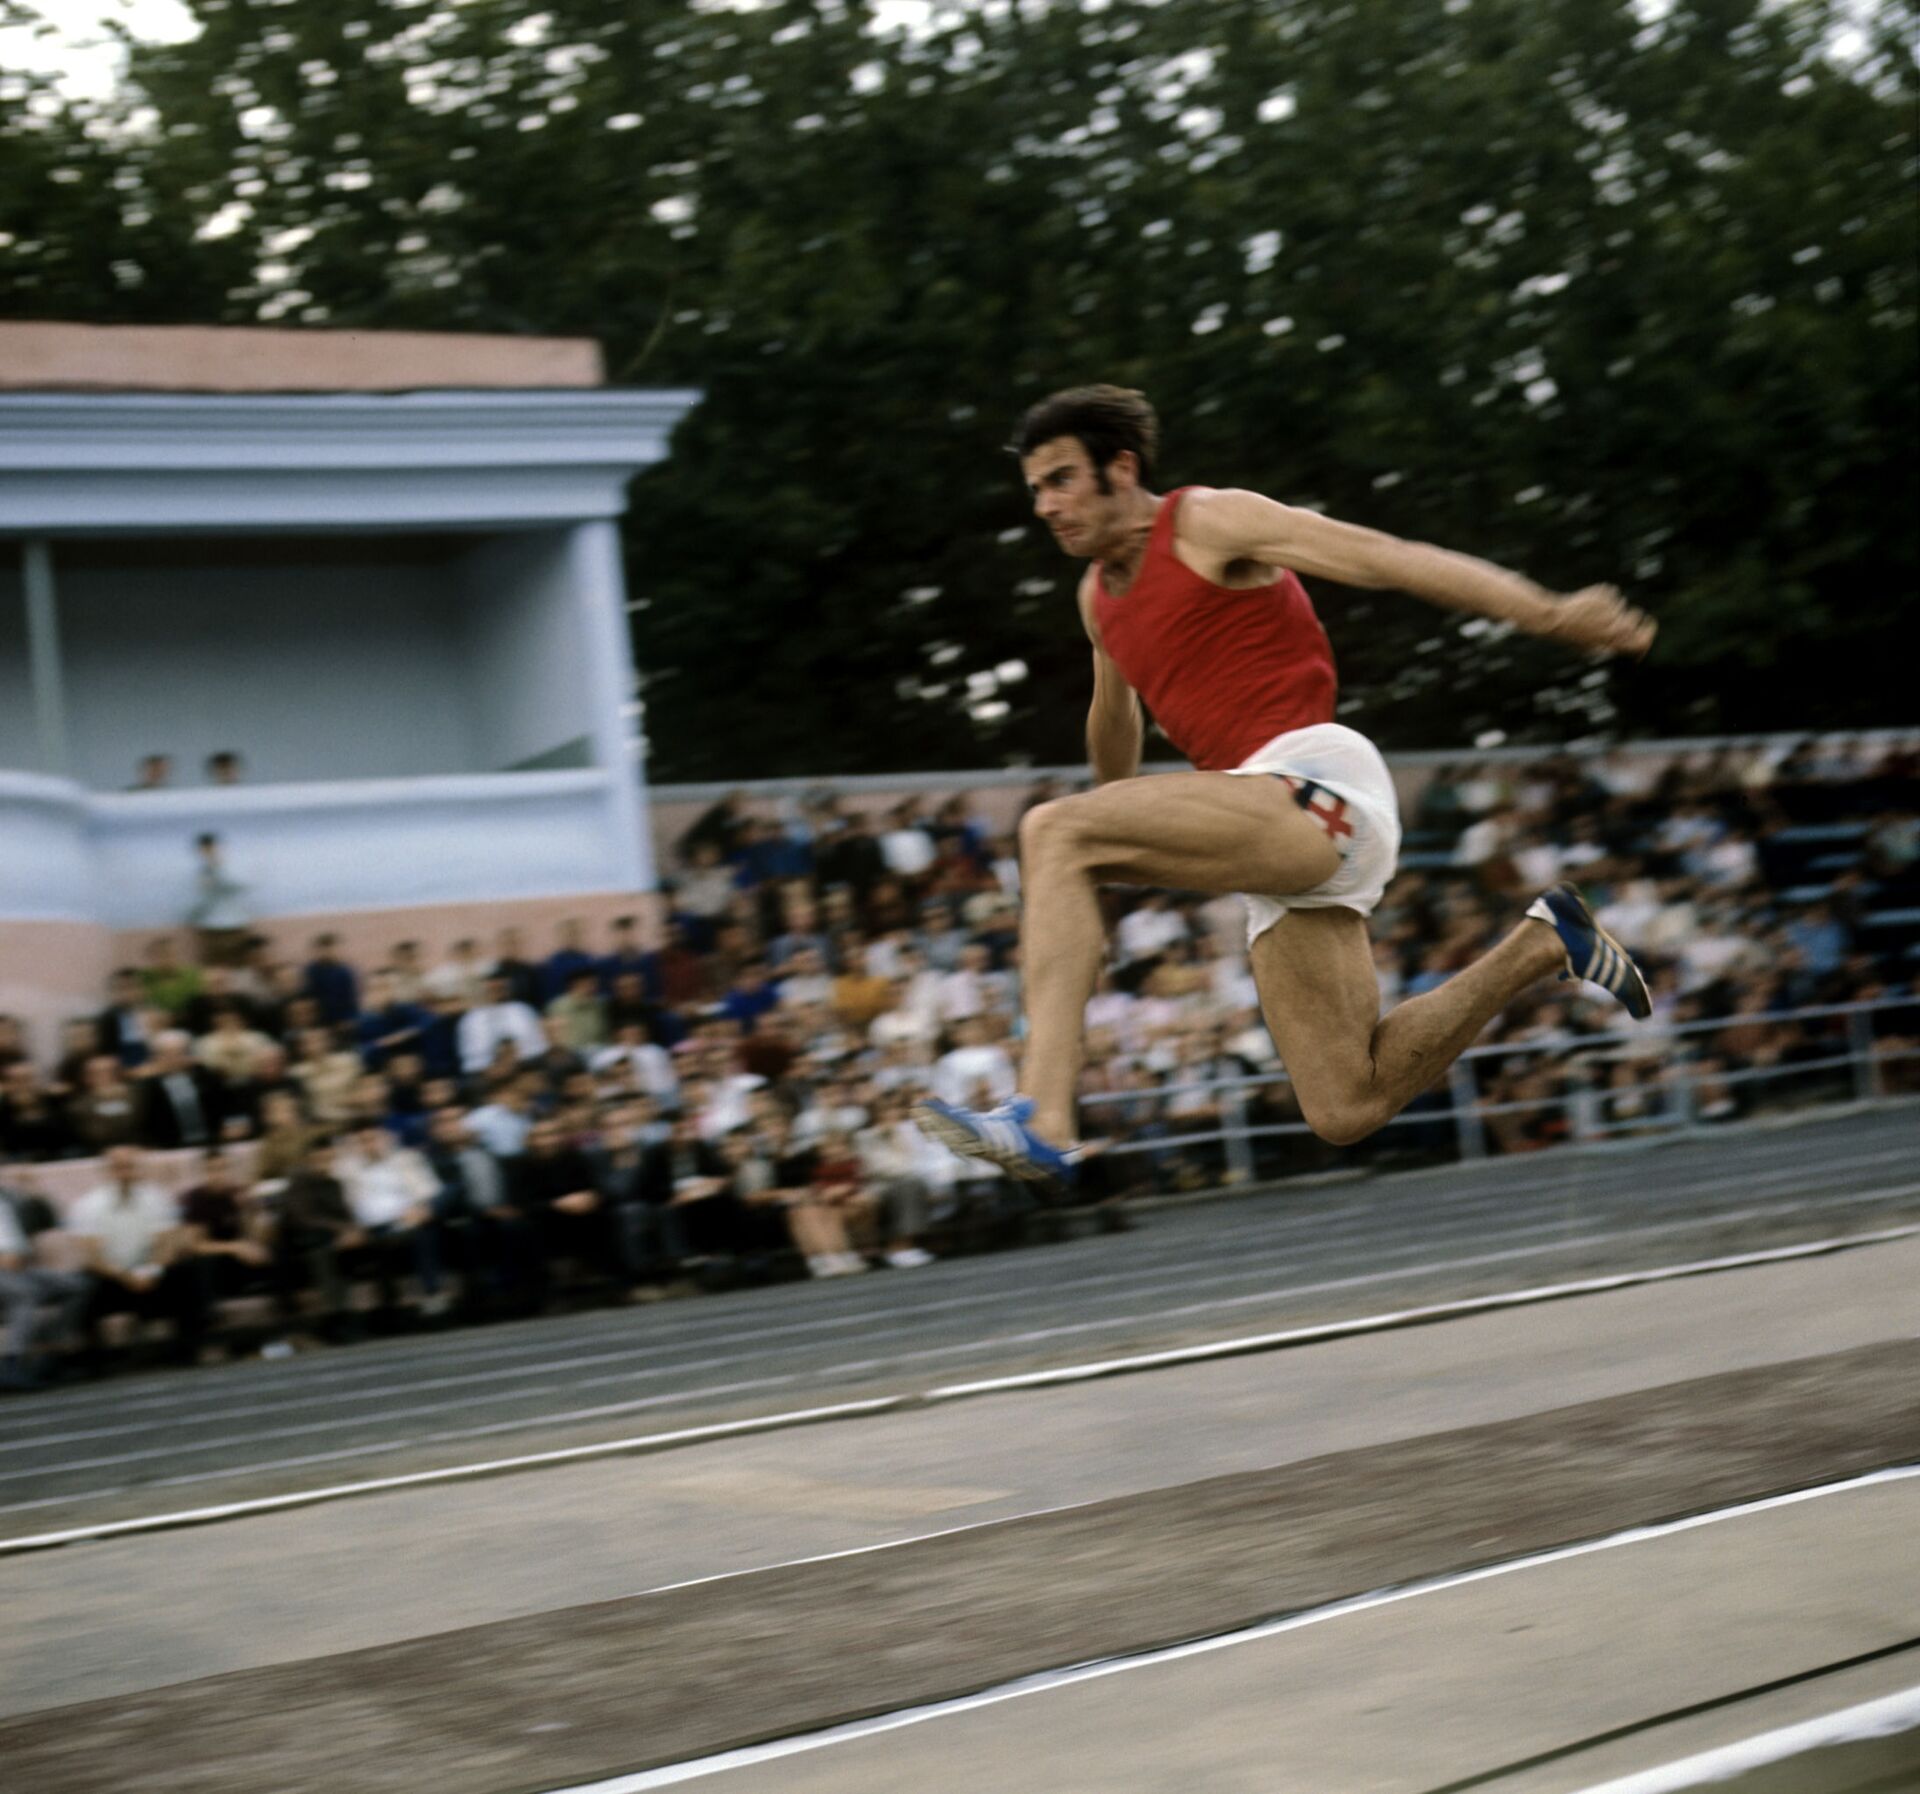 Советский легкоатлет, Олимпийский чемпион по легкой атлетике в тройном прыжке 1968 и 1972 годов Виктор Санеев во время выполнения прыжка в длину. - Sputnik Аҧсны, 1920, 03.01.2022